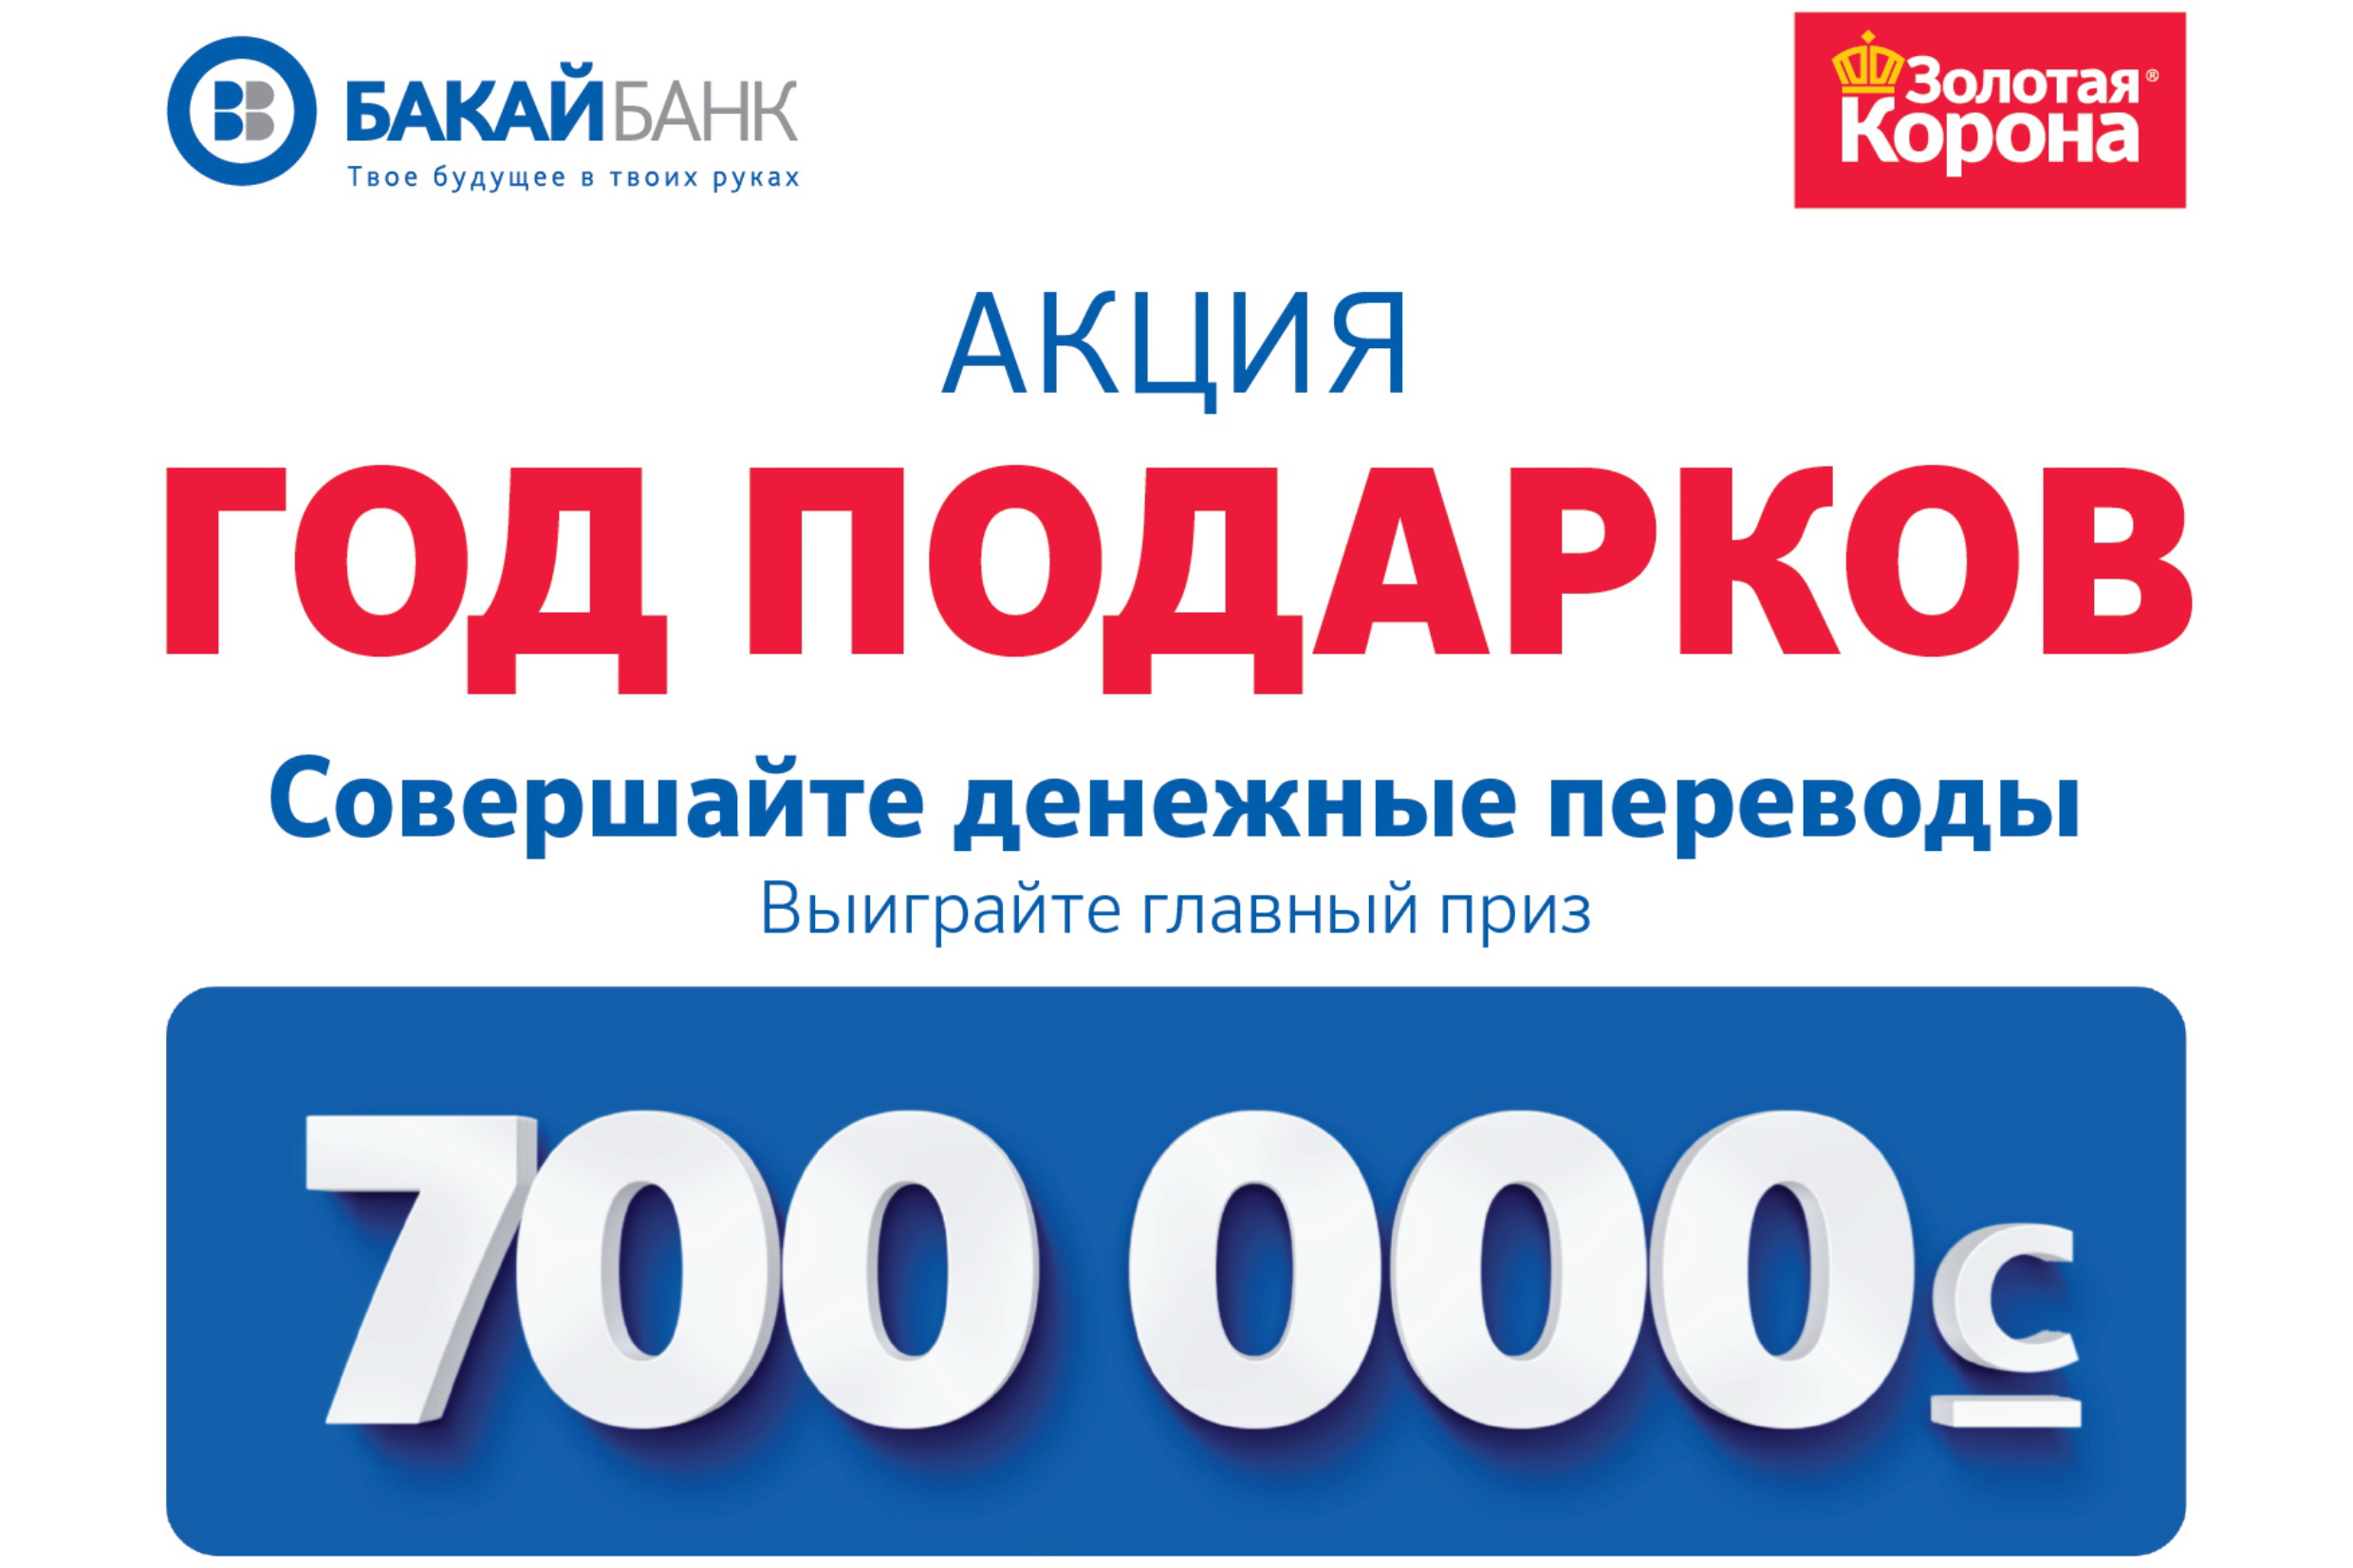 Бакай банк перевод. Бакай банк. Бакай банк Бишкек. Бакай банк логотип. Выиграй главный приз.